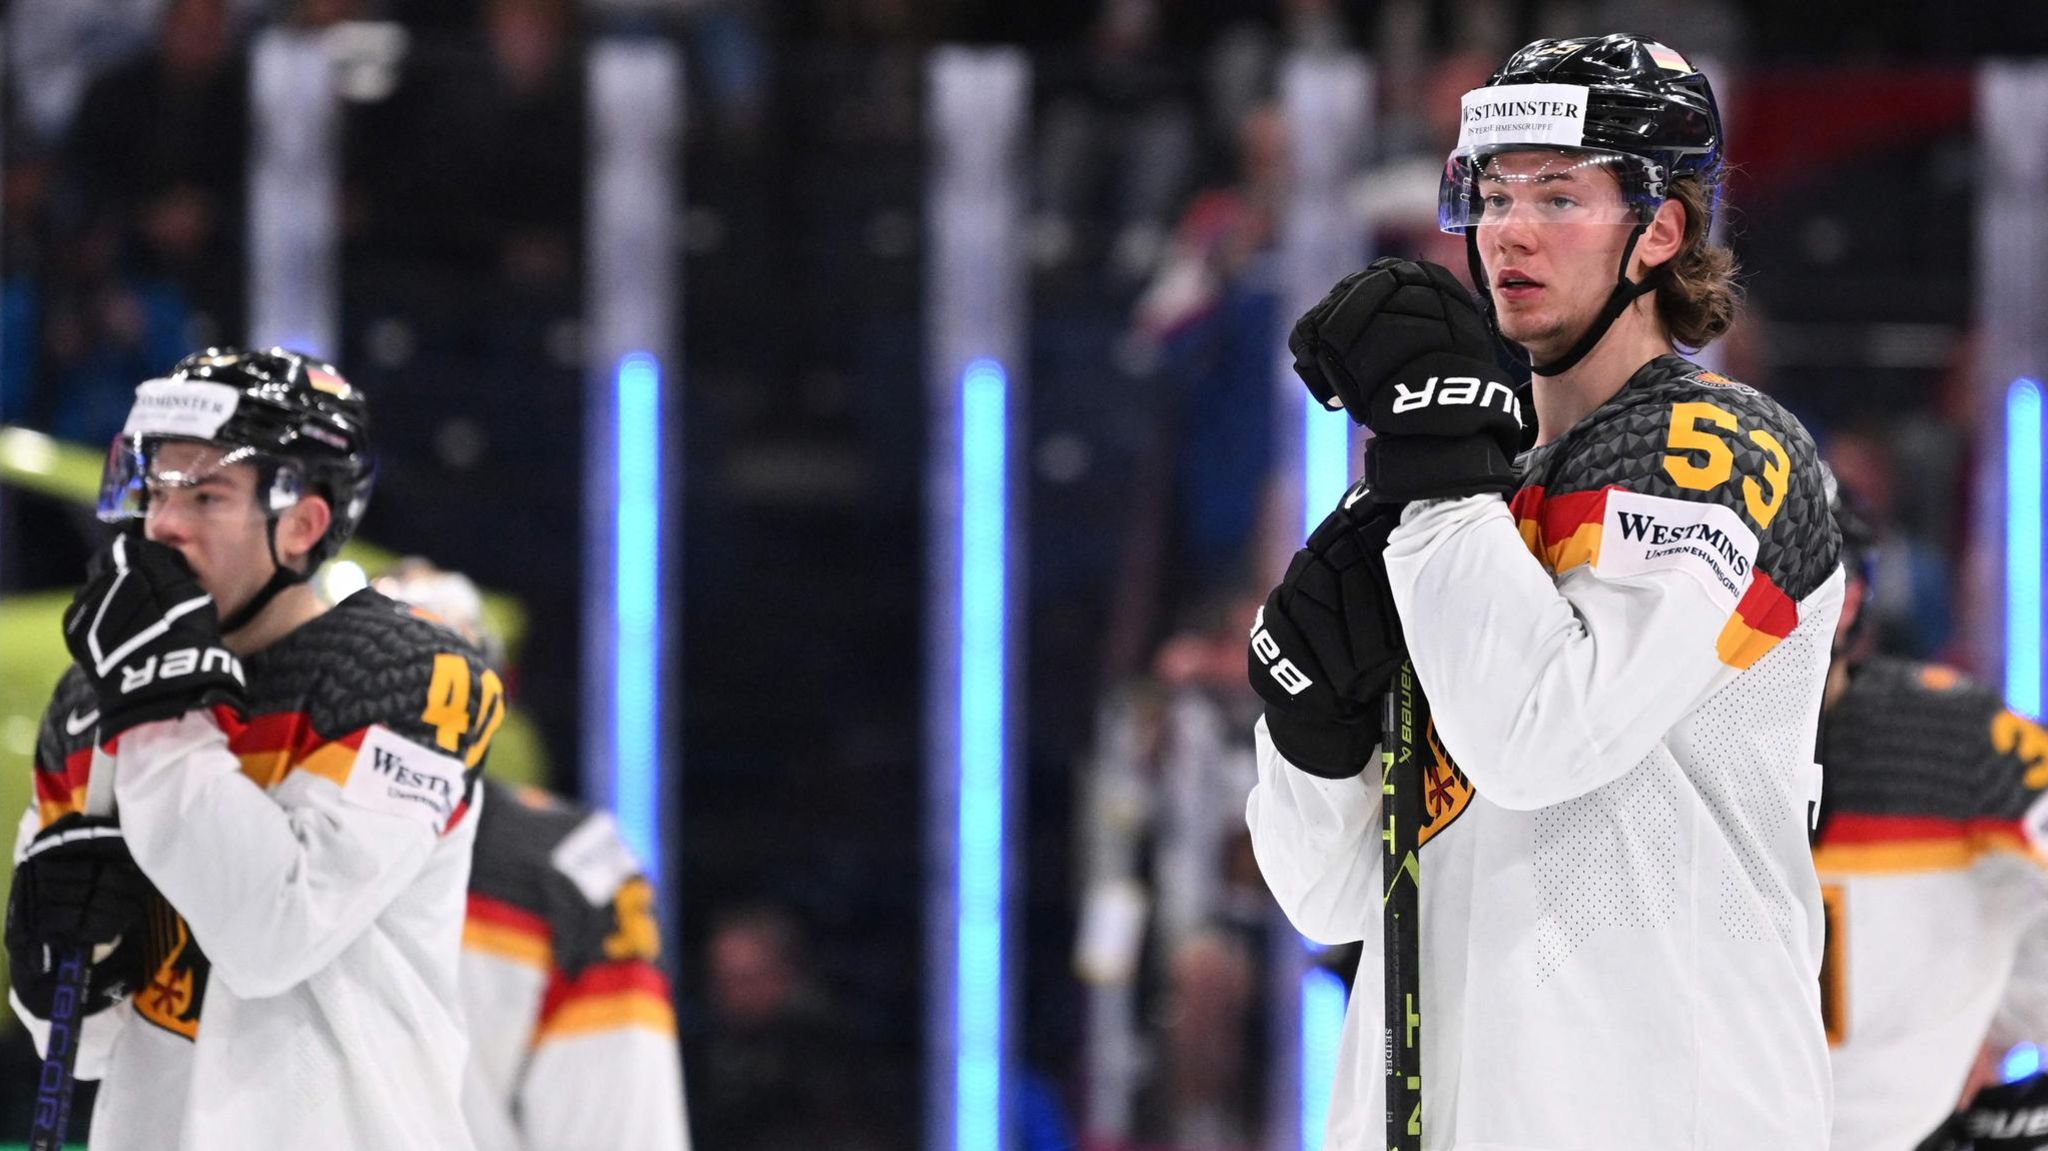 Tränen der Enttäuschung Deutschlands Eishockey-Team verpasst WM-Titel STERN.de